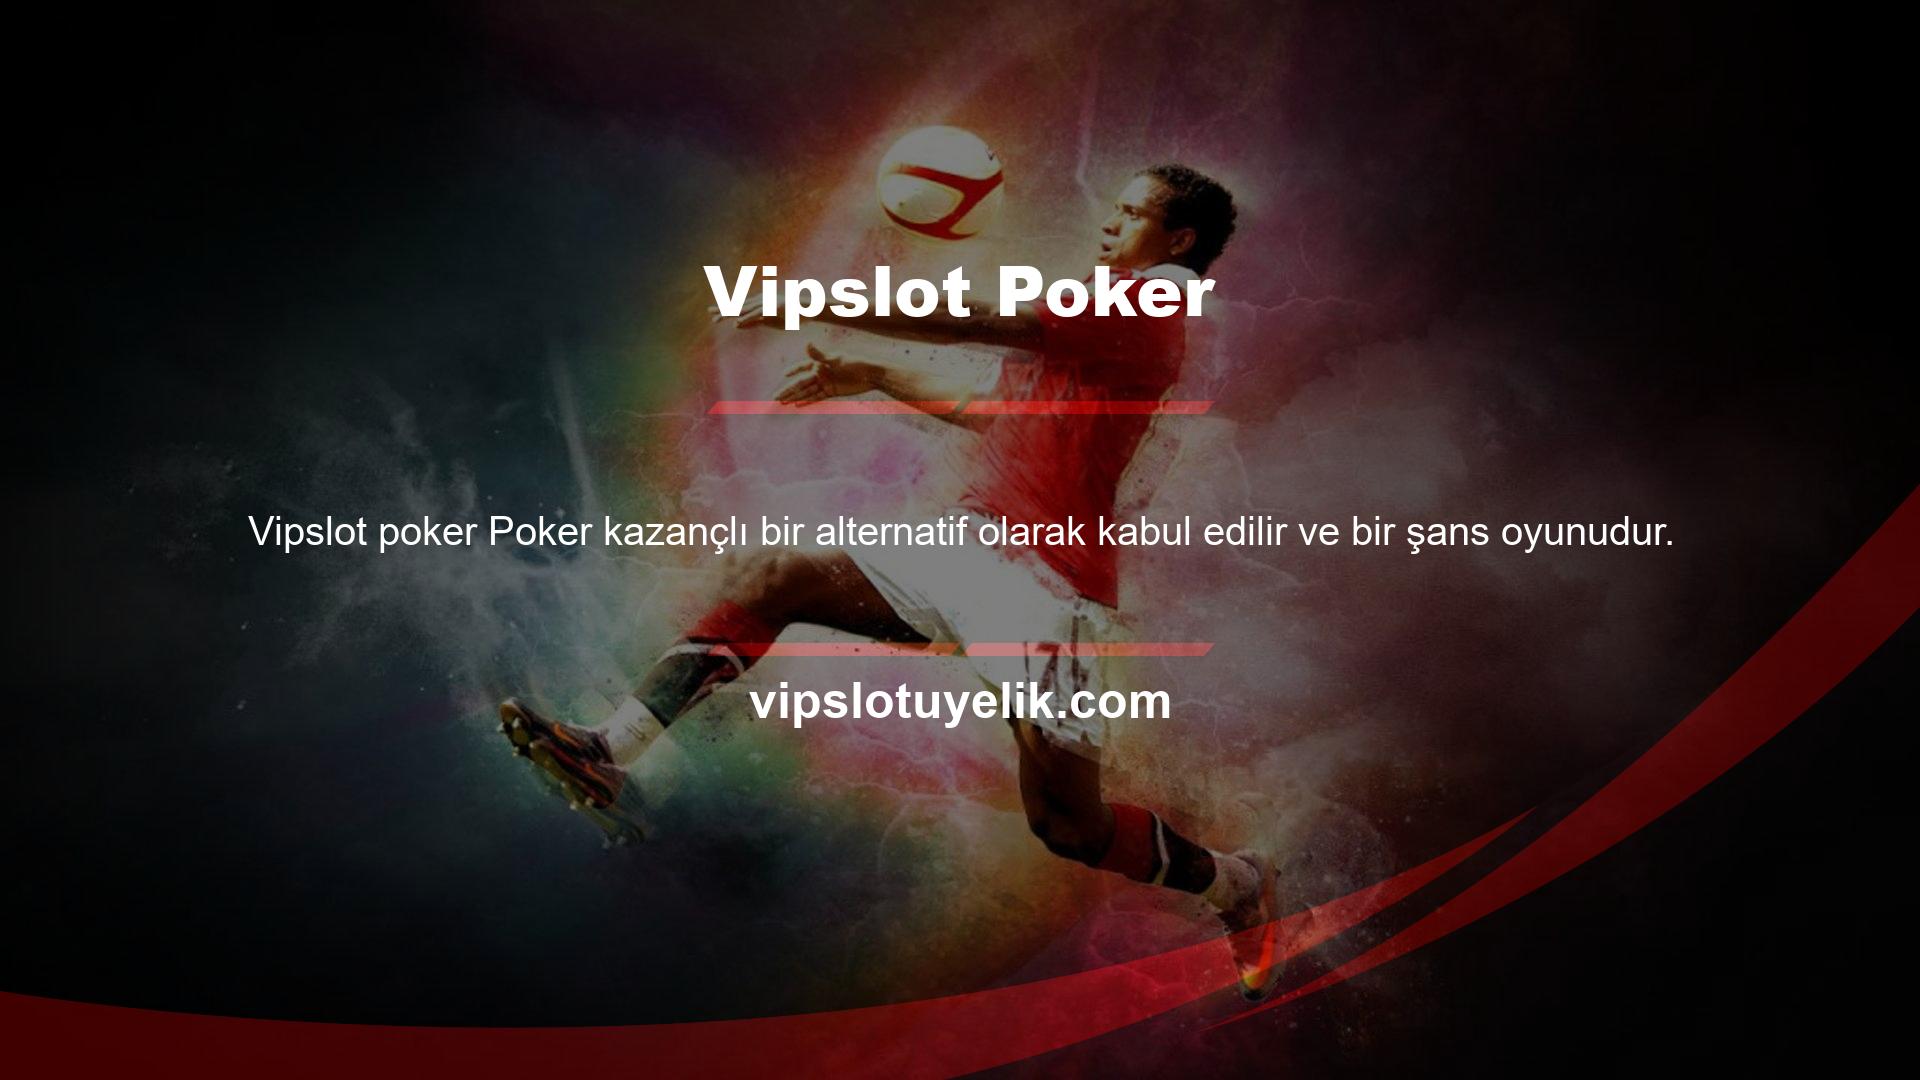 Bu bağlamda makul meblağlarda para kazanmak amacıyla bahisçilere Vipslot Games bahis sitesinde poker oyunlarına erişim sunulmaktadır